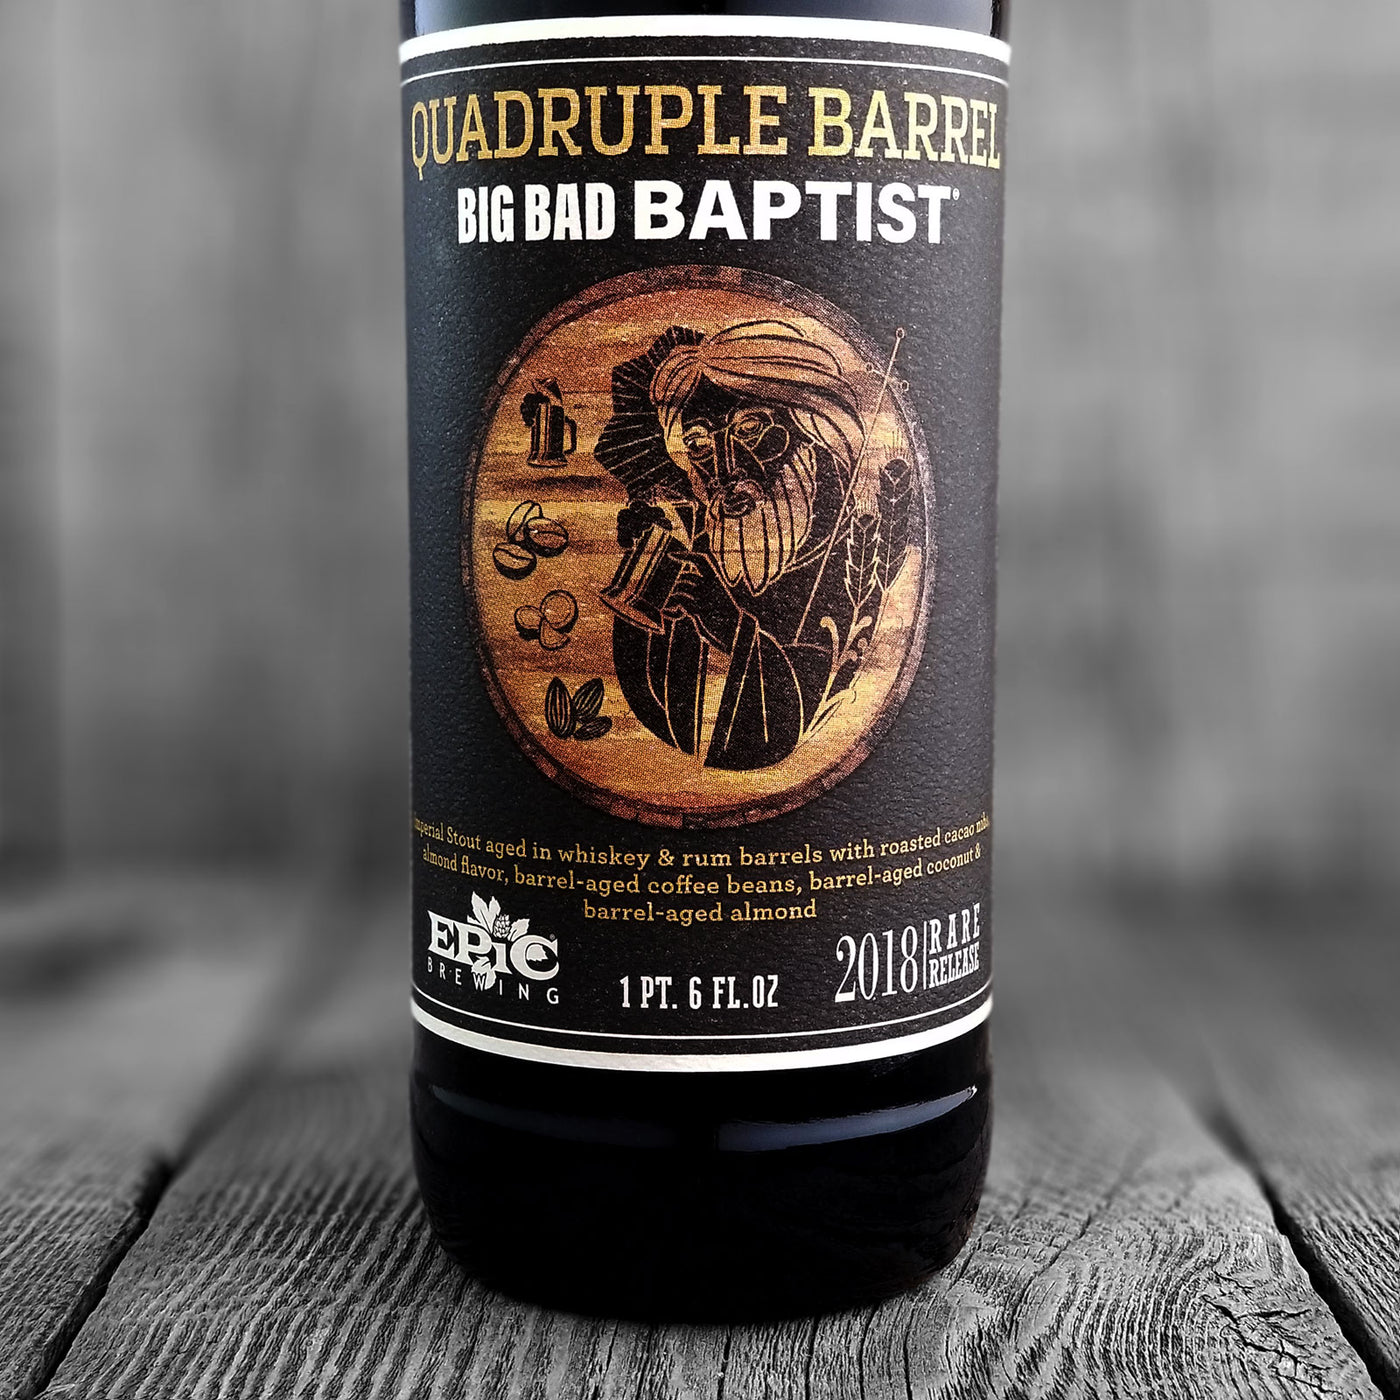 Epic Quadruple Barrel Big Bad Baptist (Limit 2)